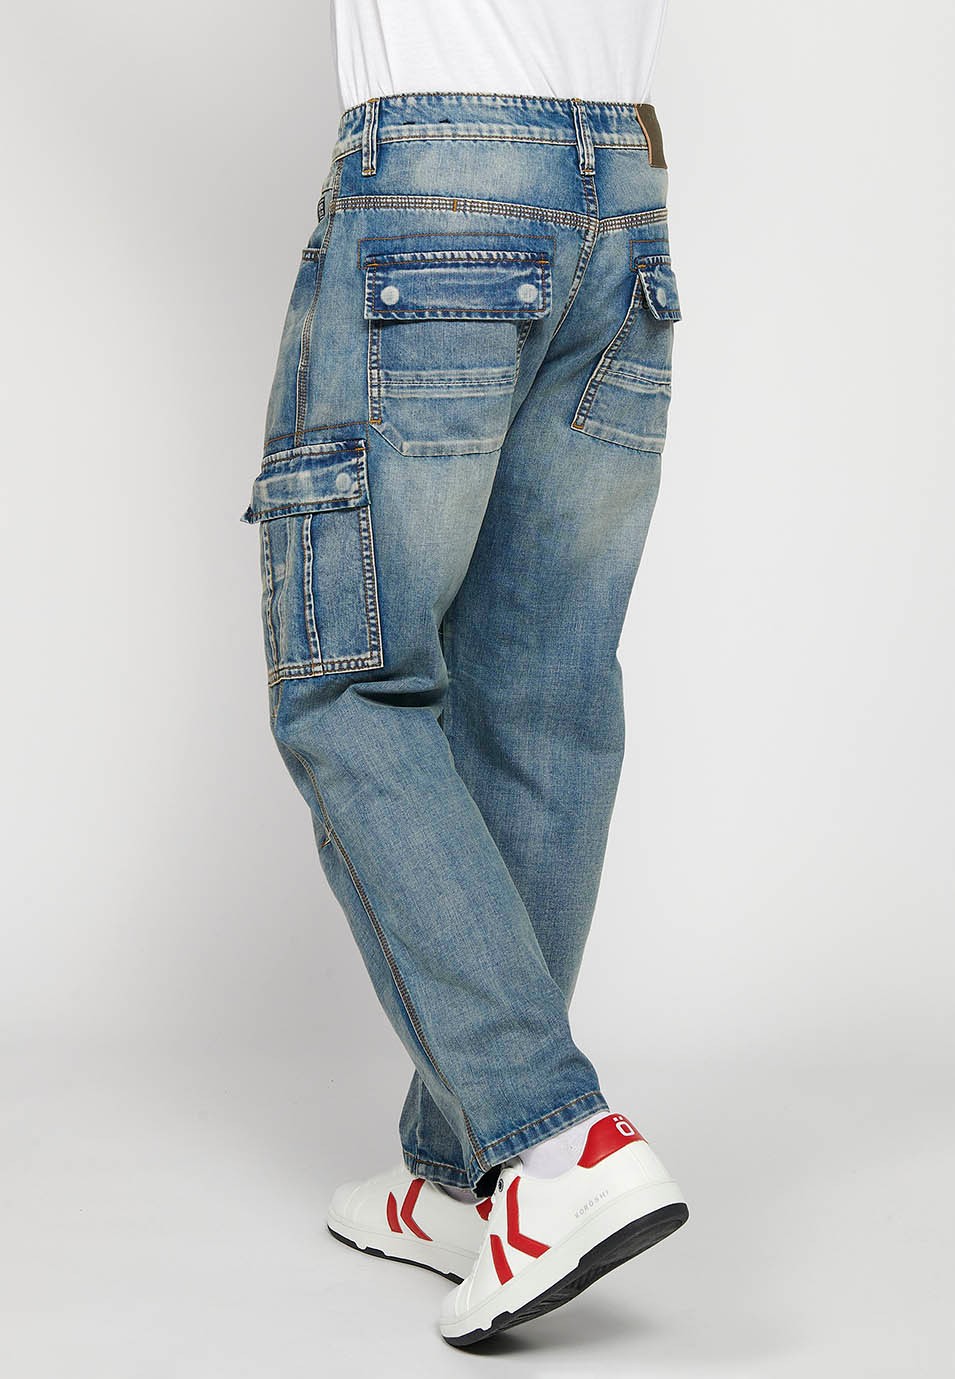 Pantalons càrrec llarg amb Tancament davanter amb cremallera i botó amb Butxaques laterals amb solapa de Color Blau per a Home 8